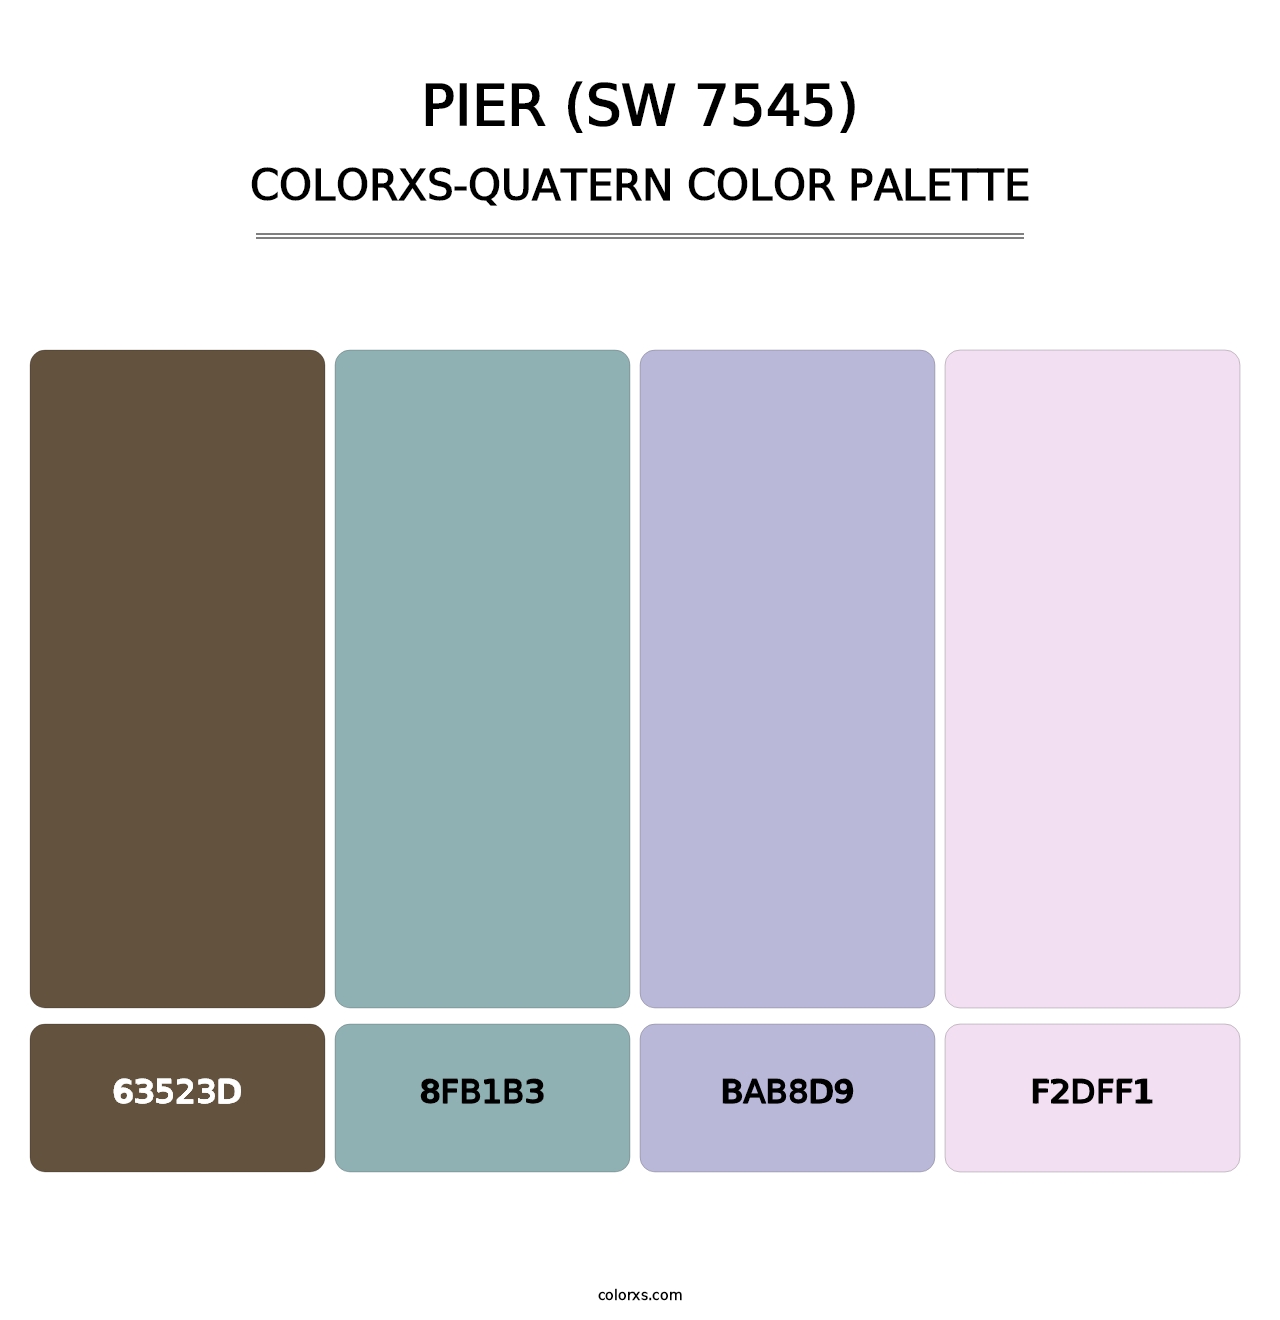 Pier (SW 7545) - Colorxs Quatern Palette